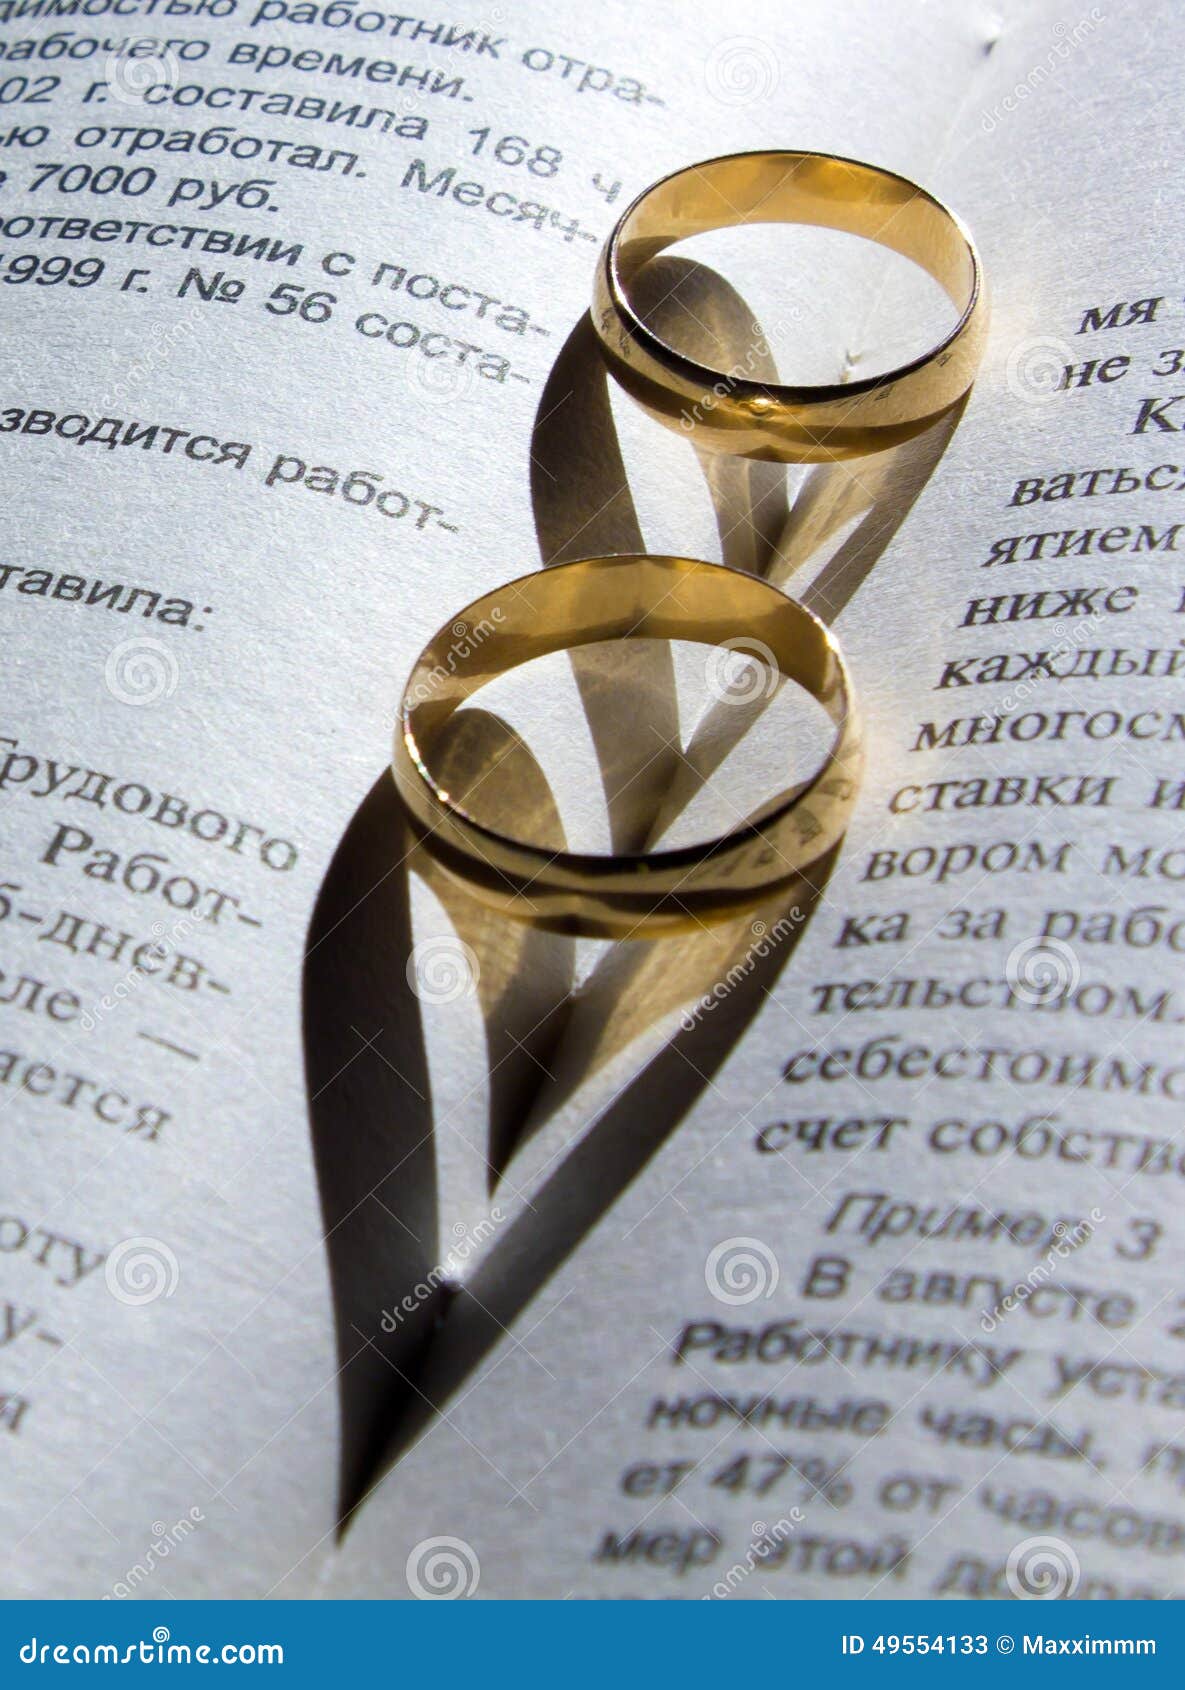 Shadow wedding ring